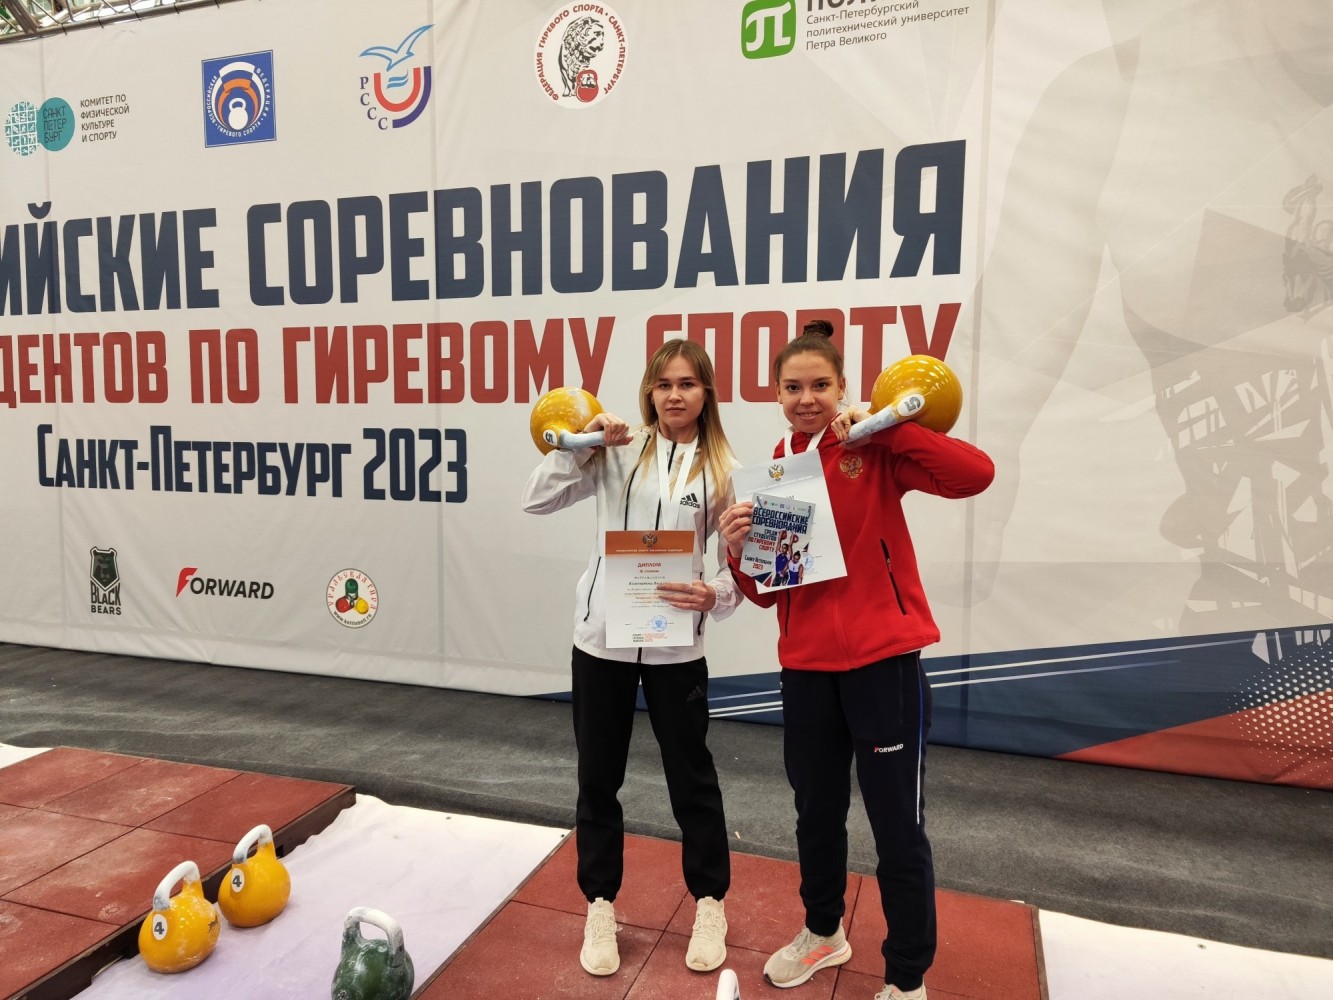 Всероссийские соревнования среди студентов по гиревому спорту